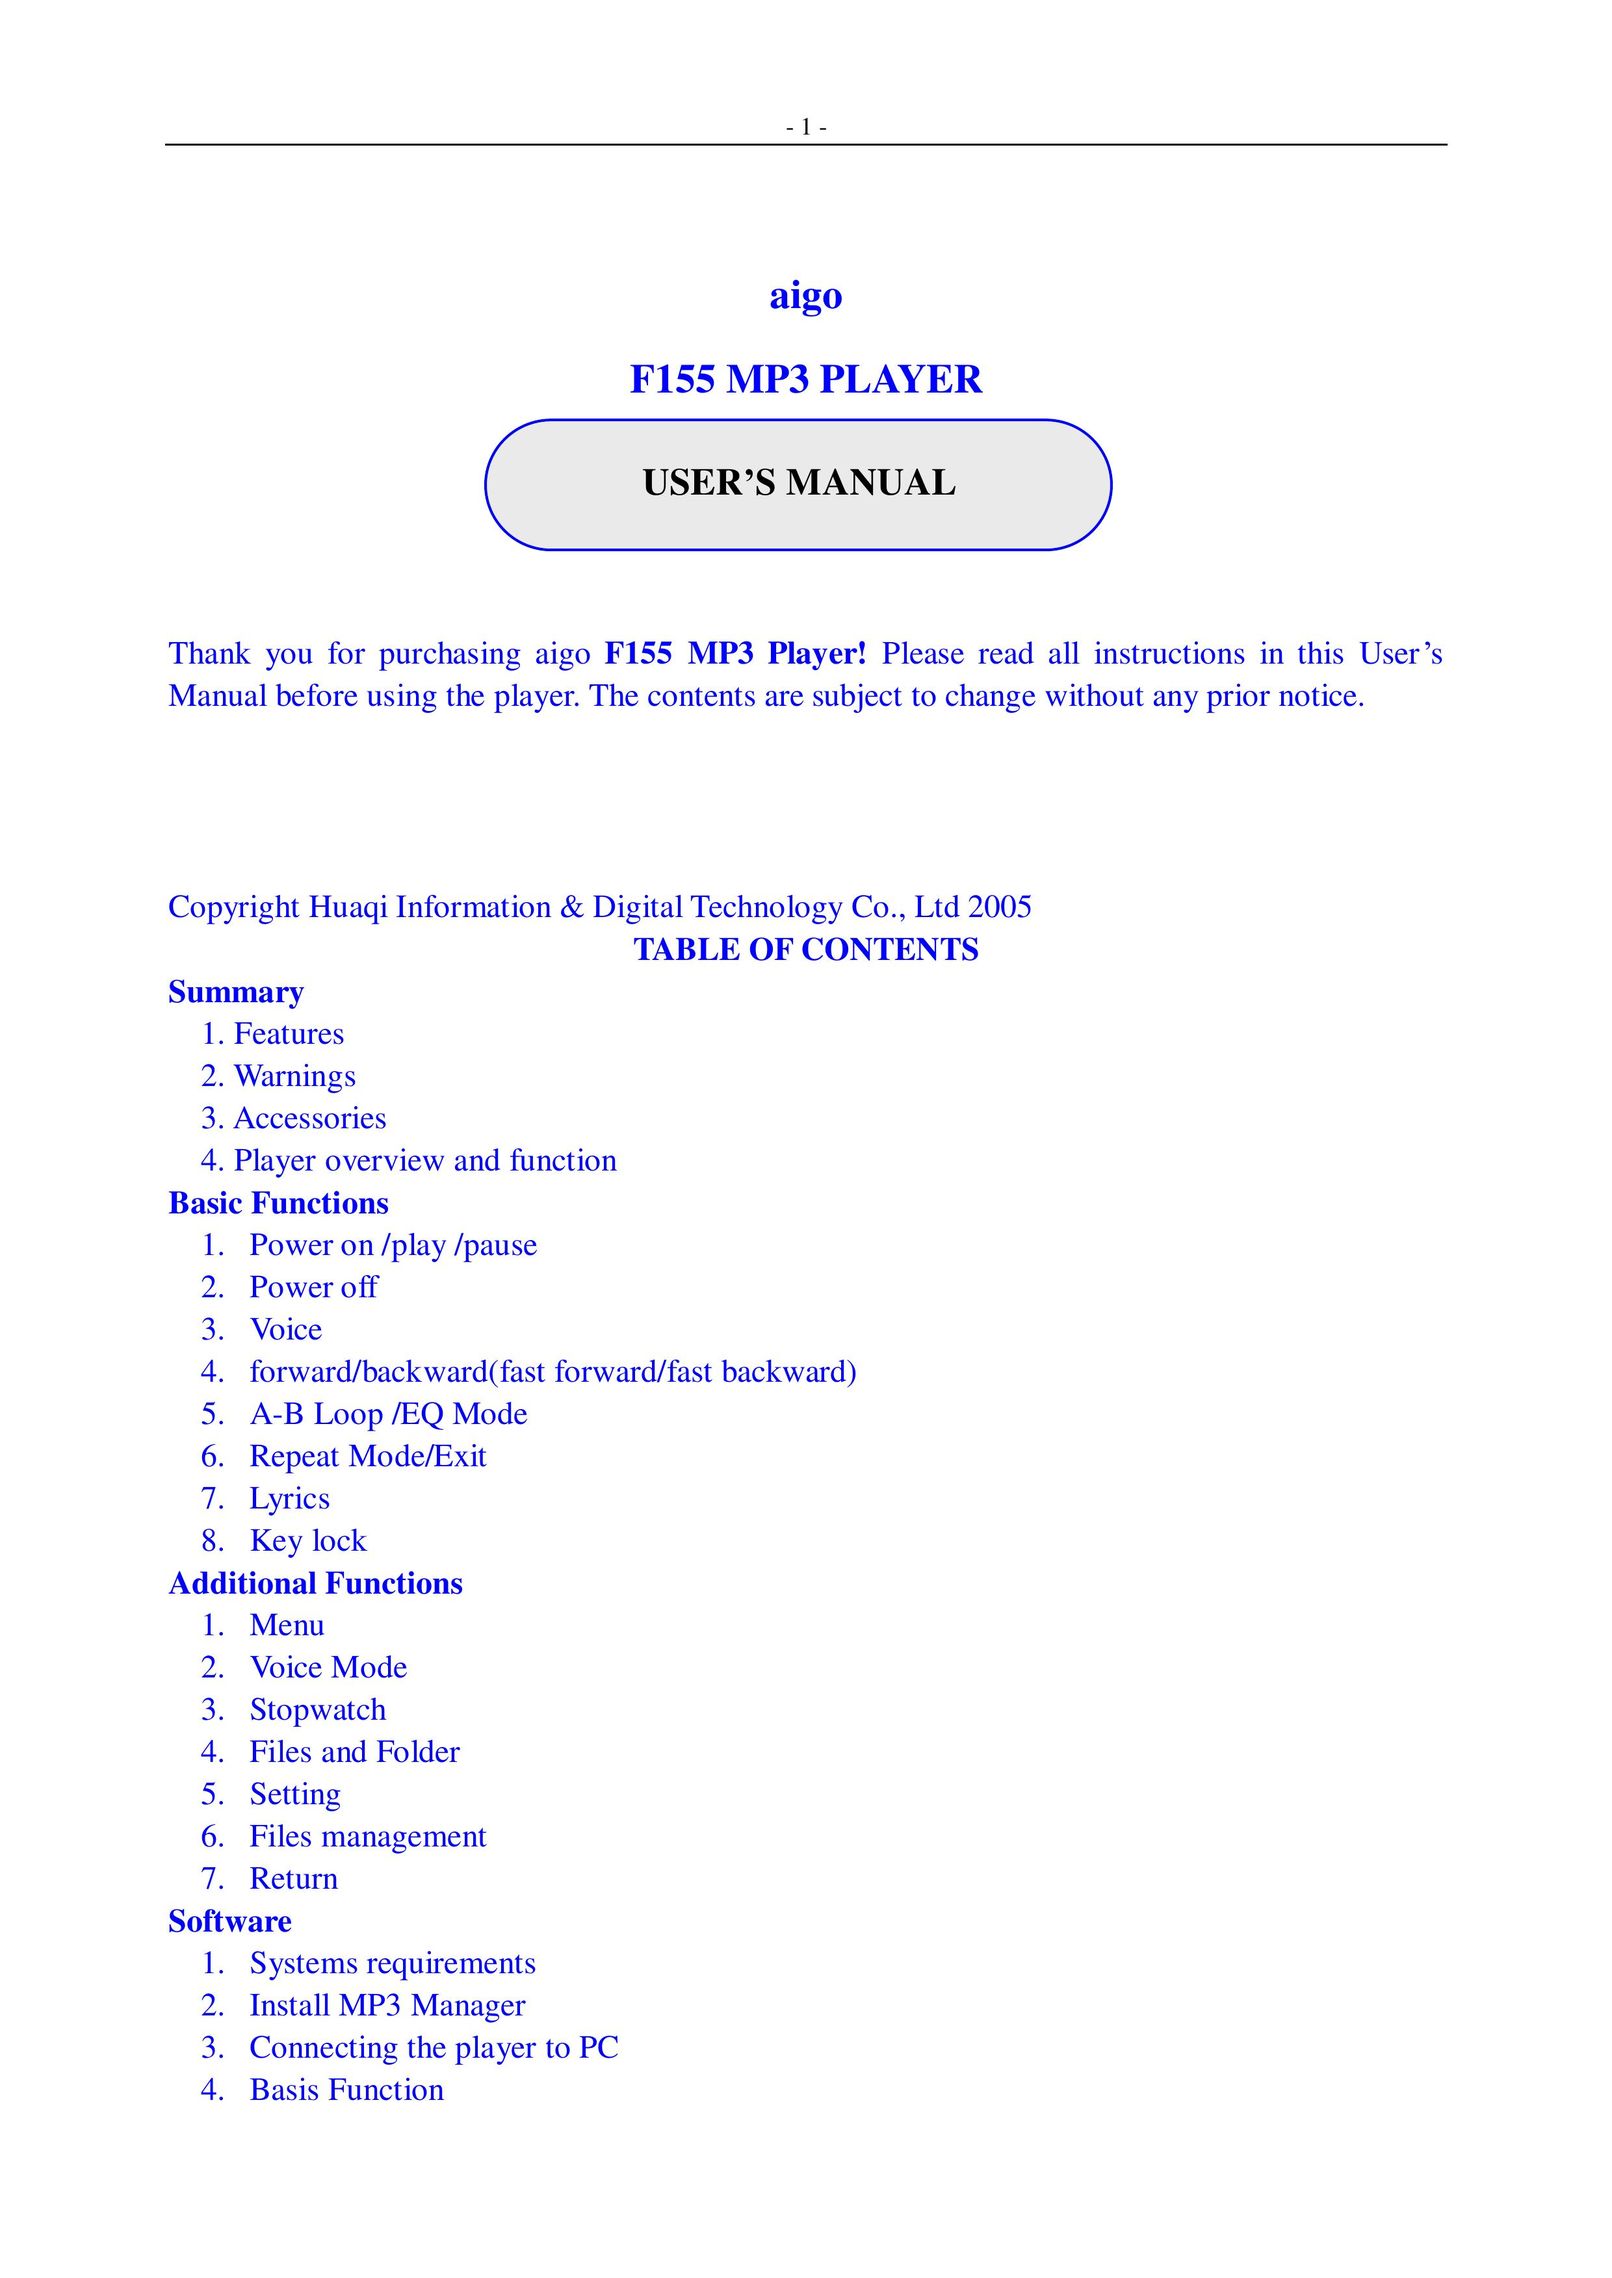 Aigo F155 MP3 Player User Manual